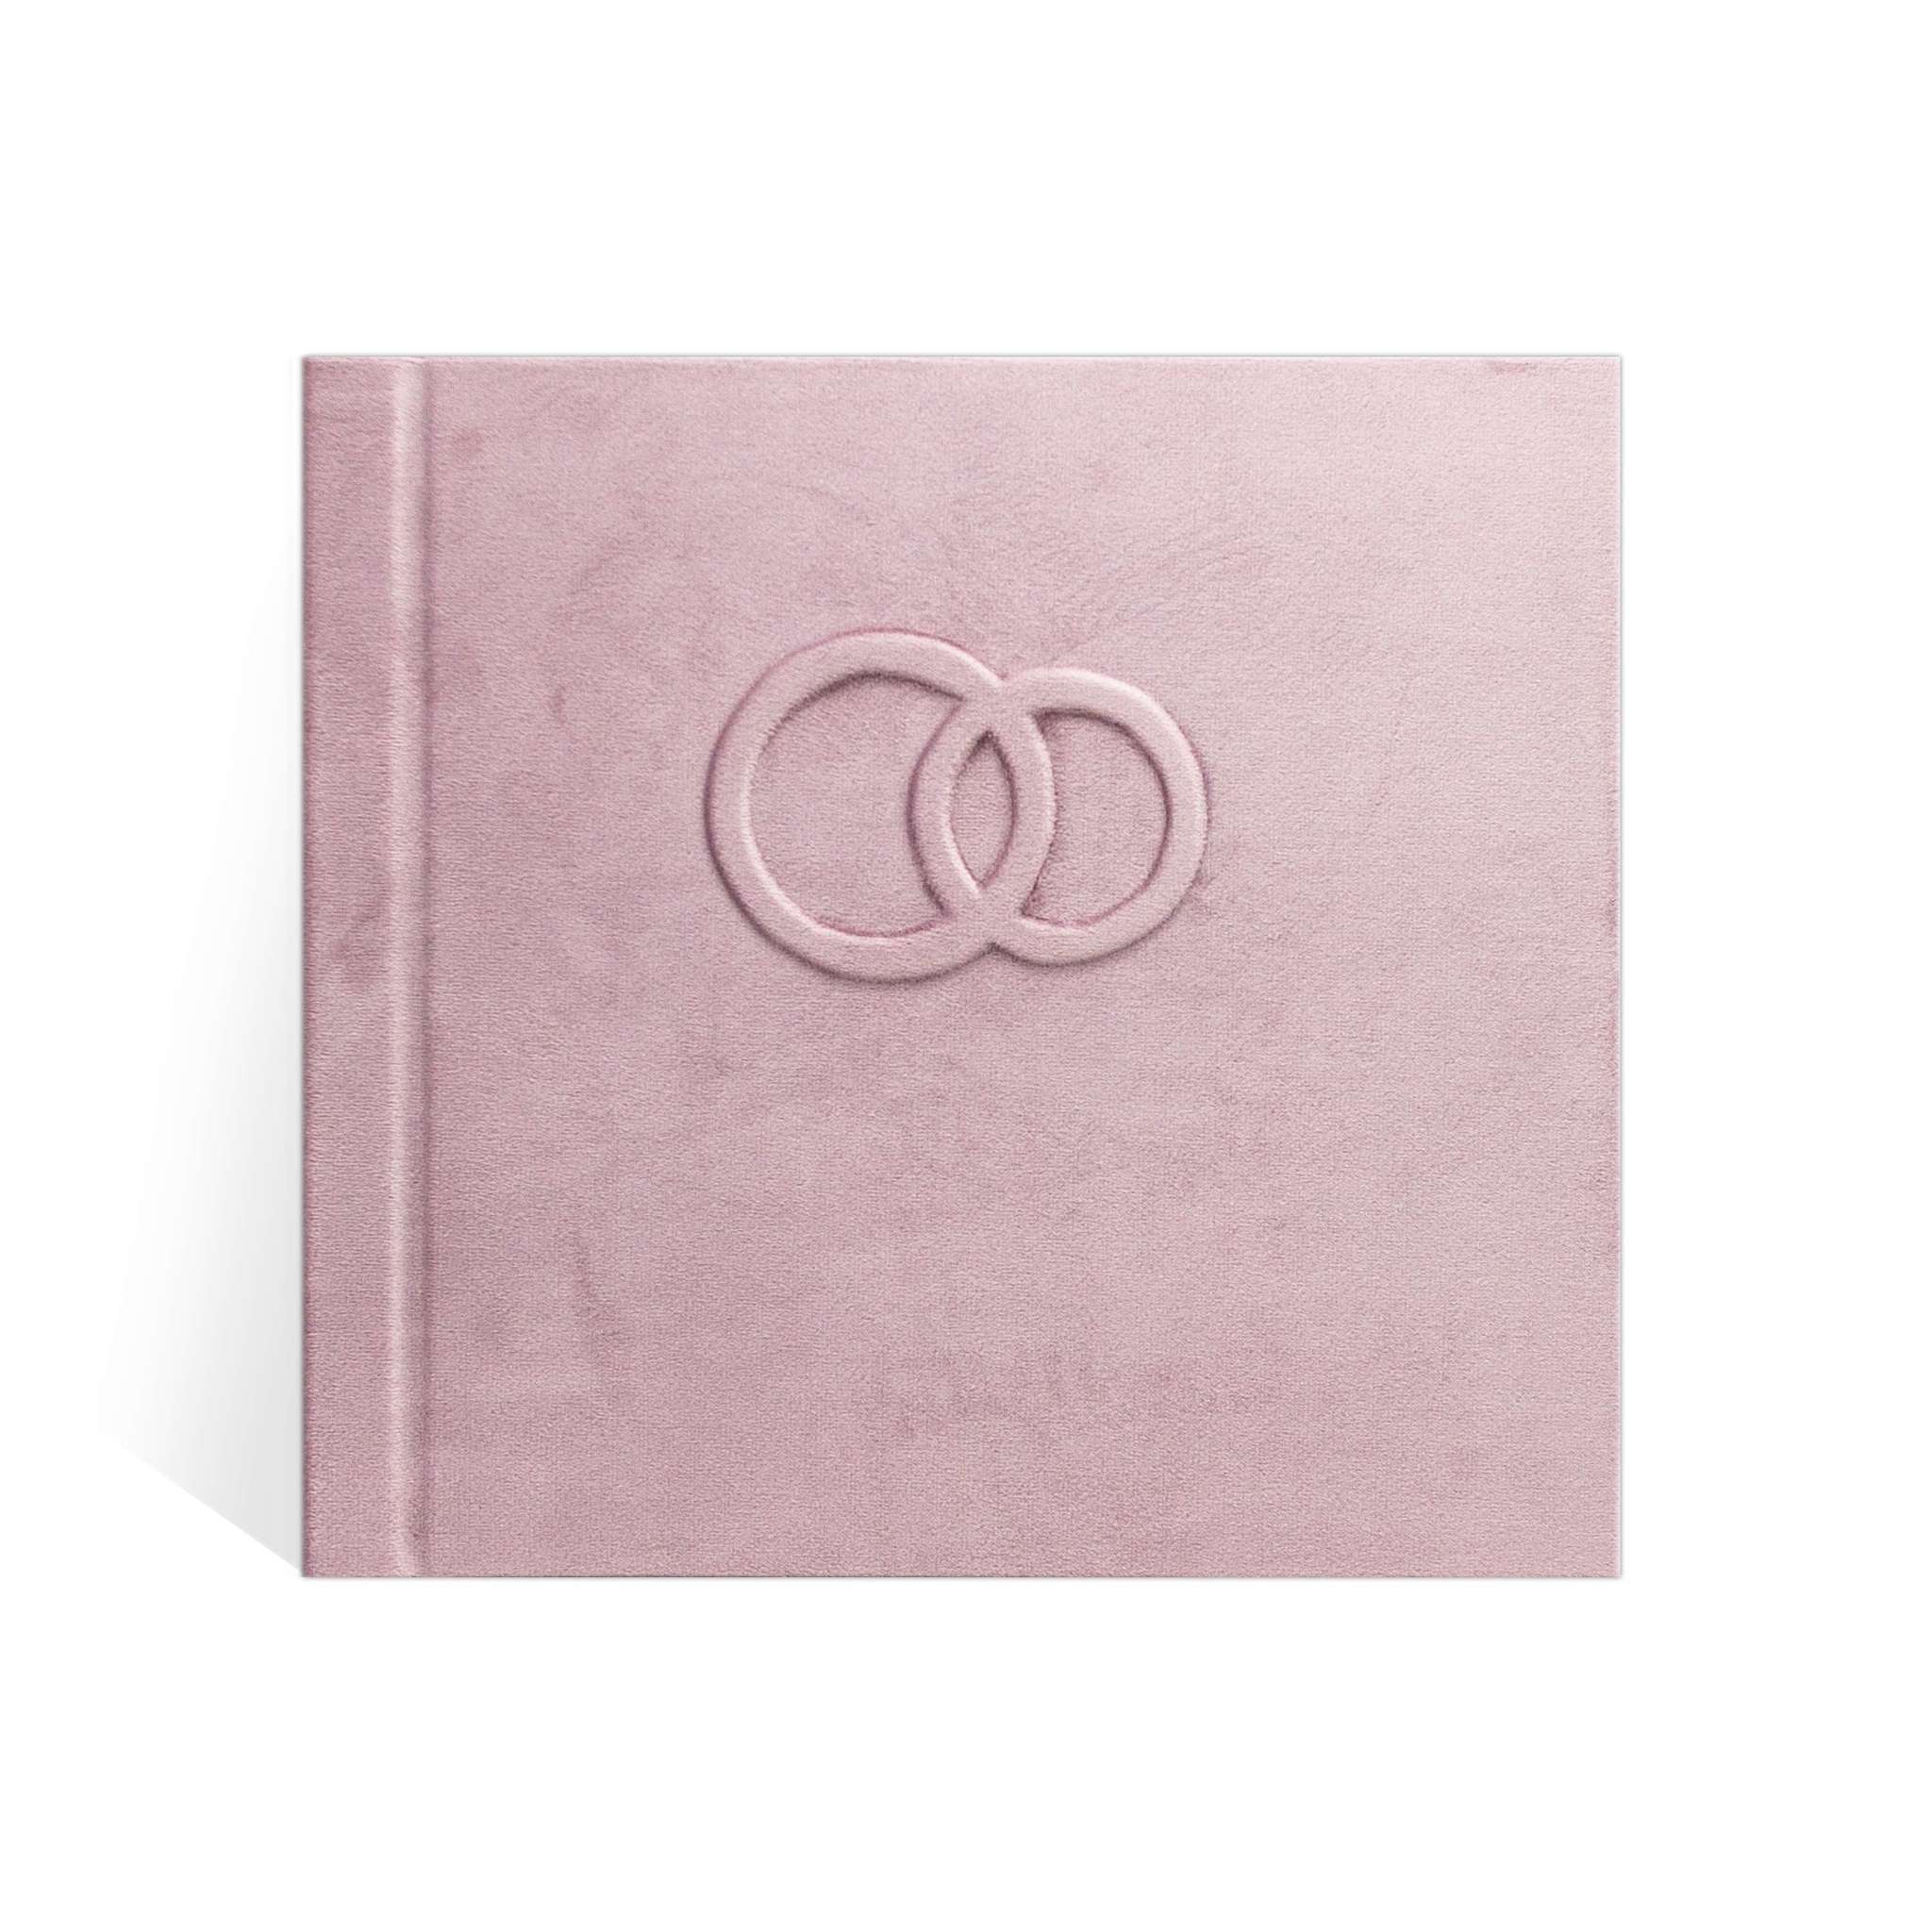 Свадебный альбом Айвори большой, обложка тканевая с нежным узором